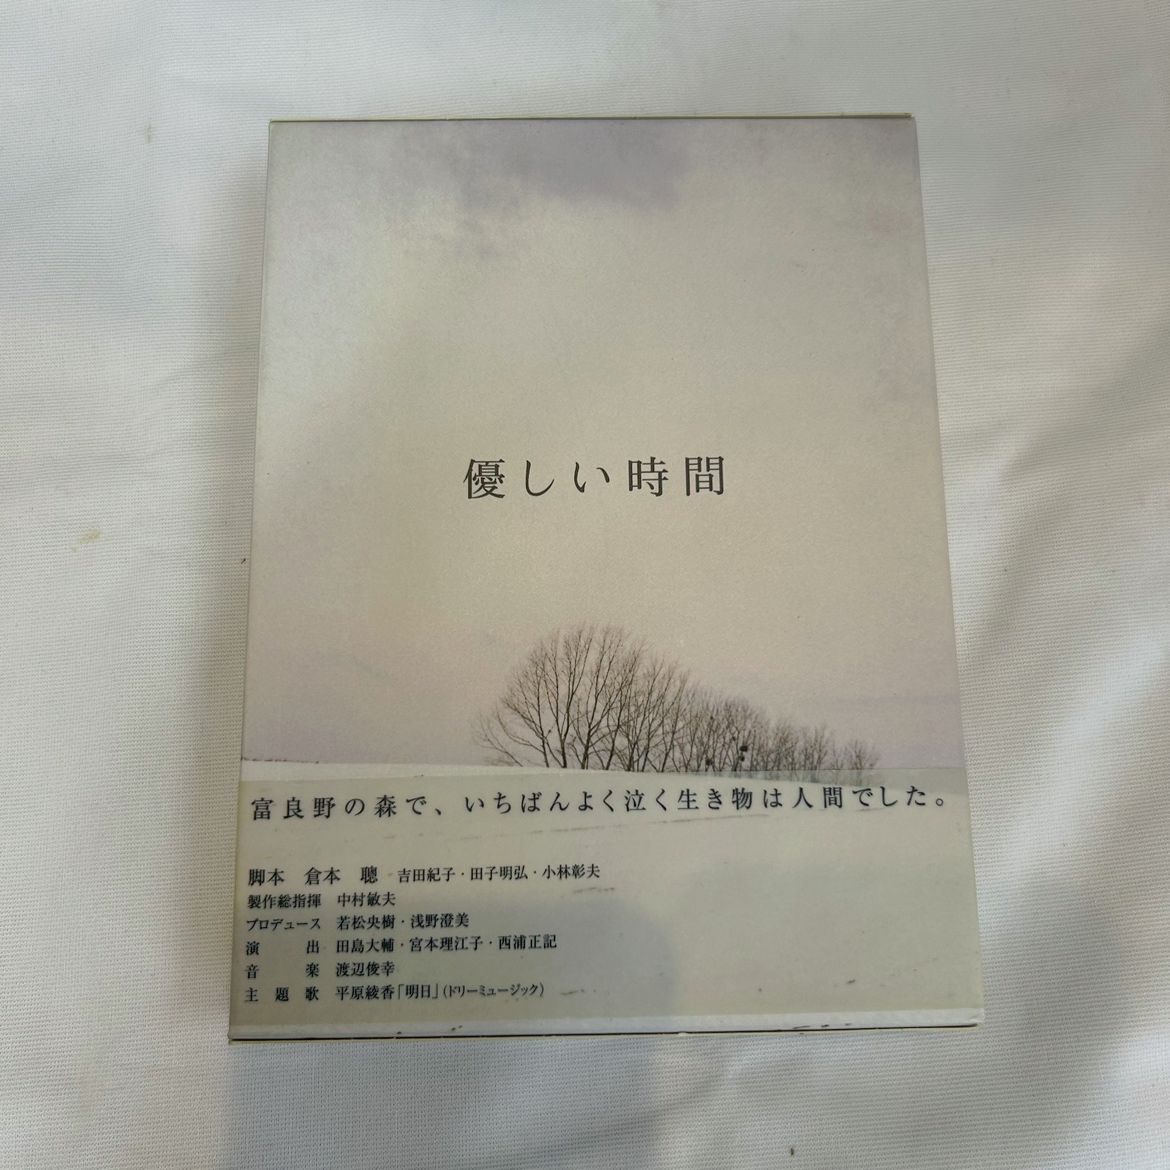 ♦627 優しい時間 DVD-BOX 脚本:倉本聰